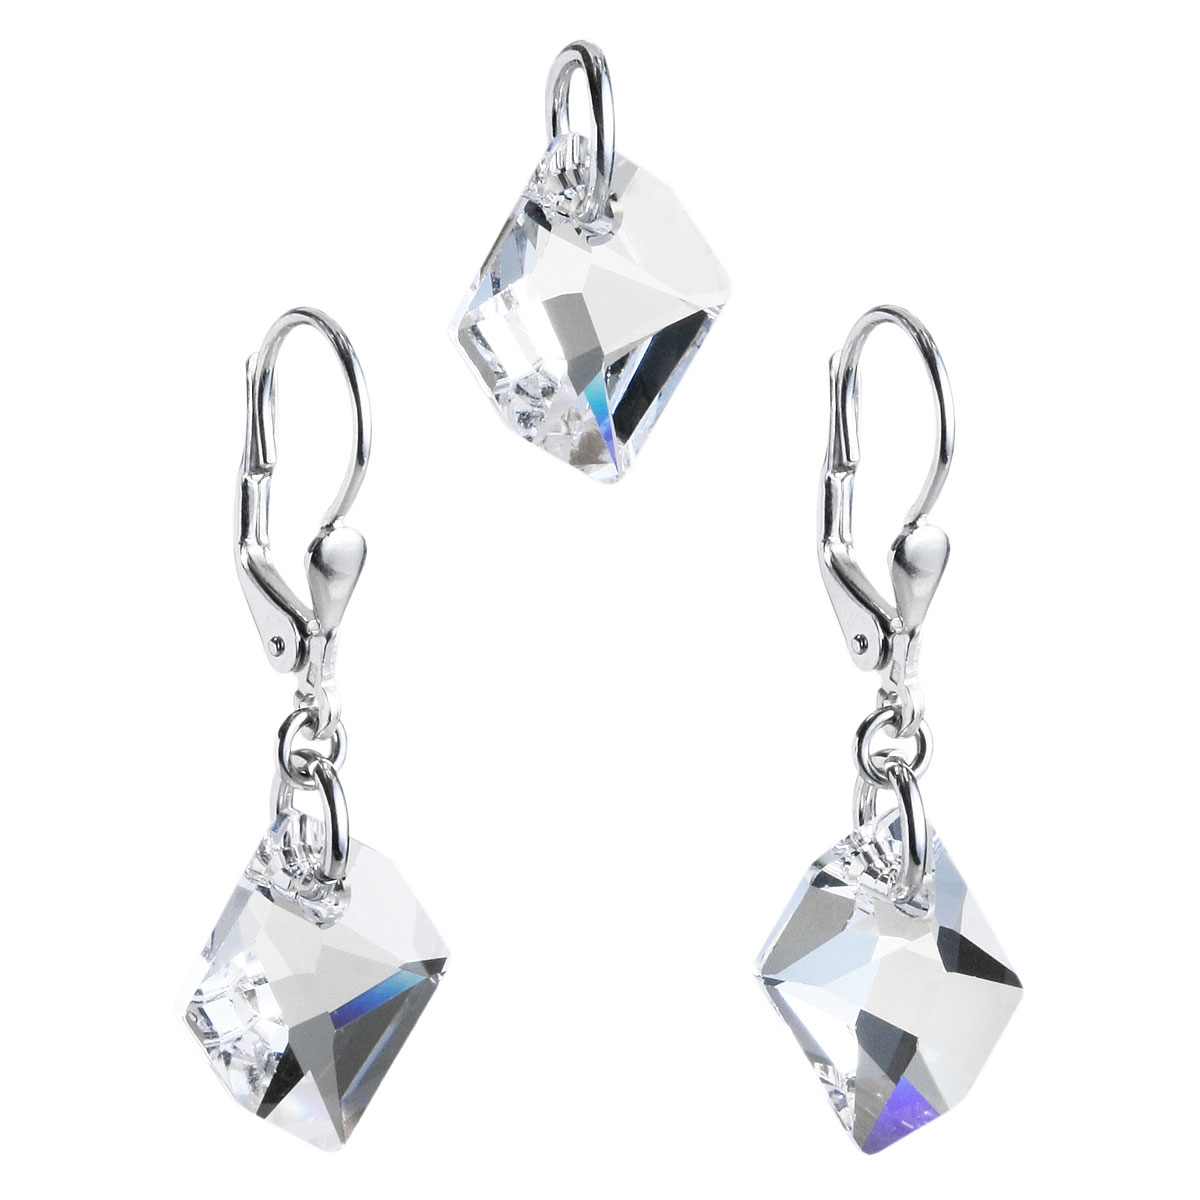 Sada šperkov s kameňmi Crystals from Swarovski ® Crystal